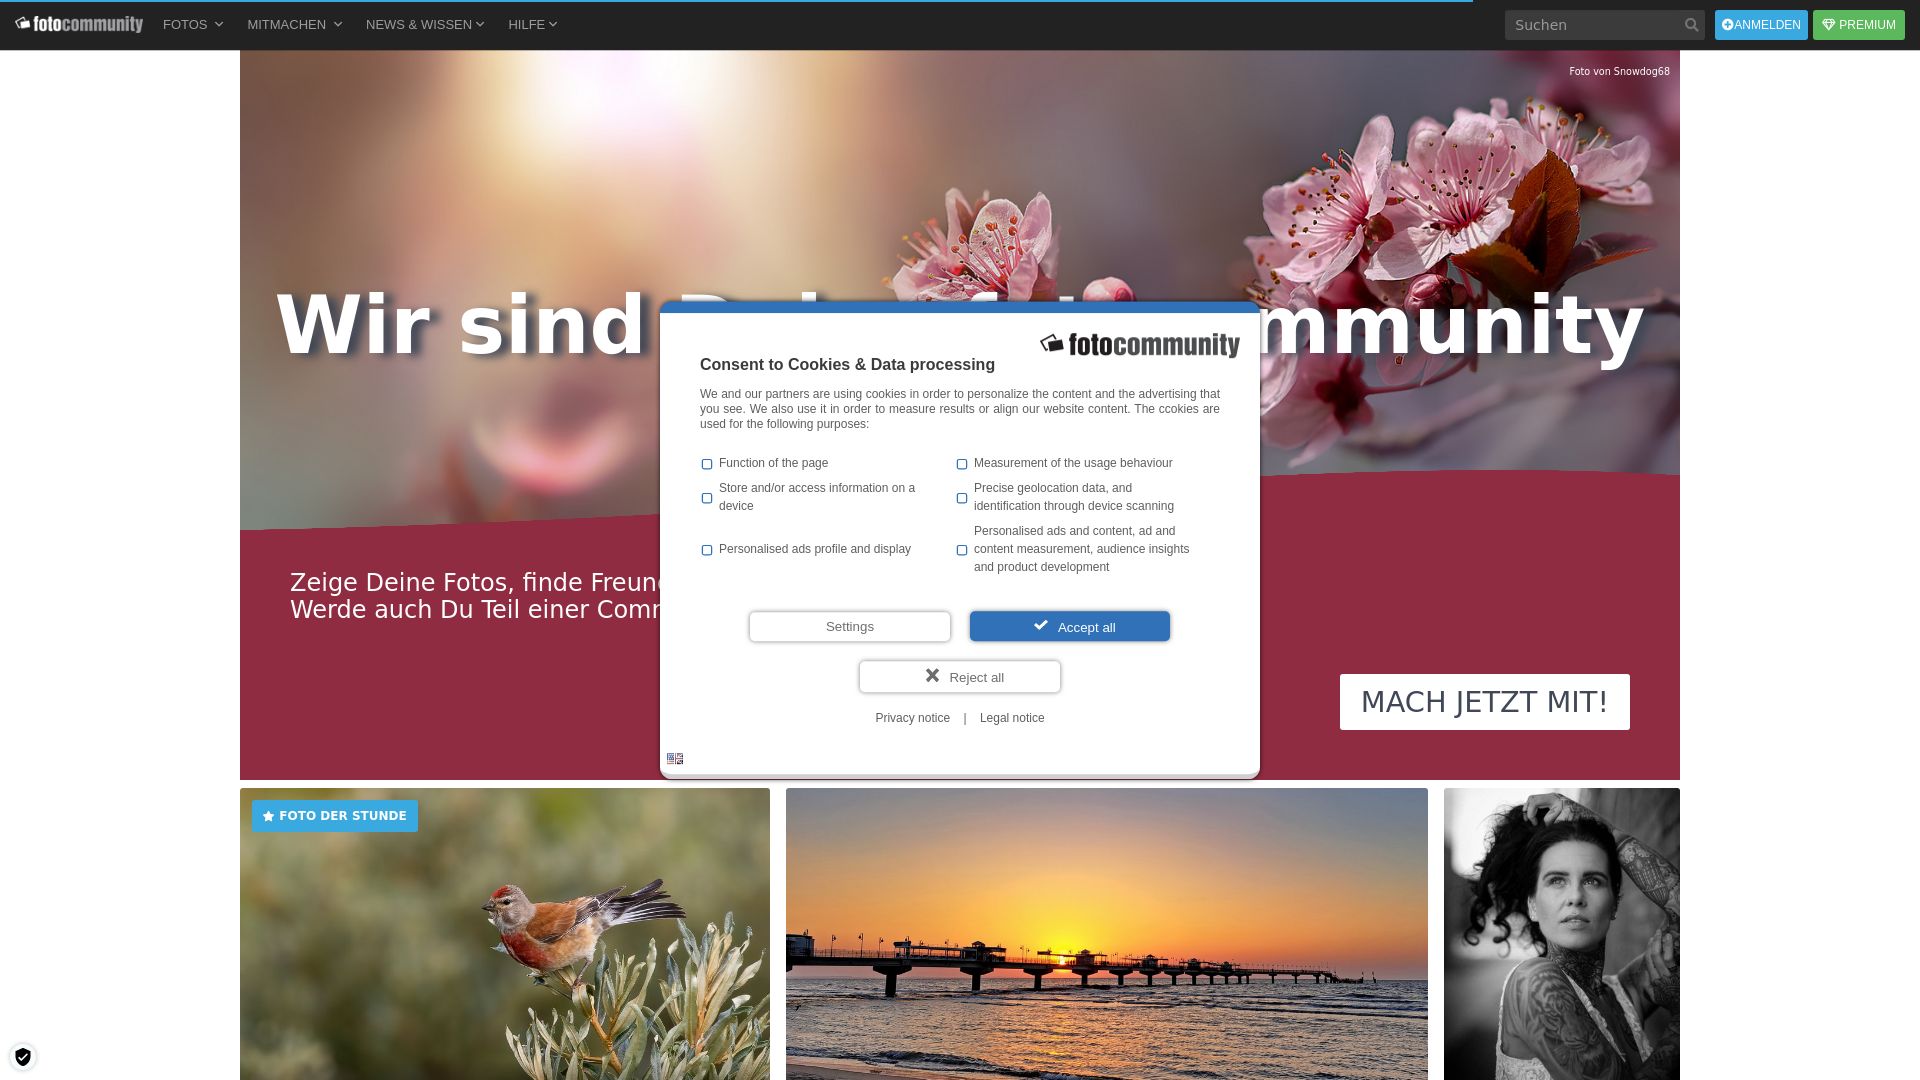 Website status fotocommunity.de is   ONLINE